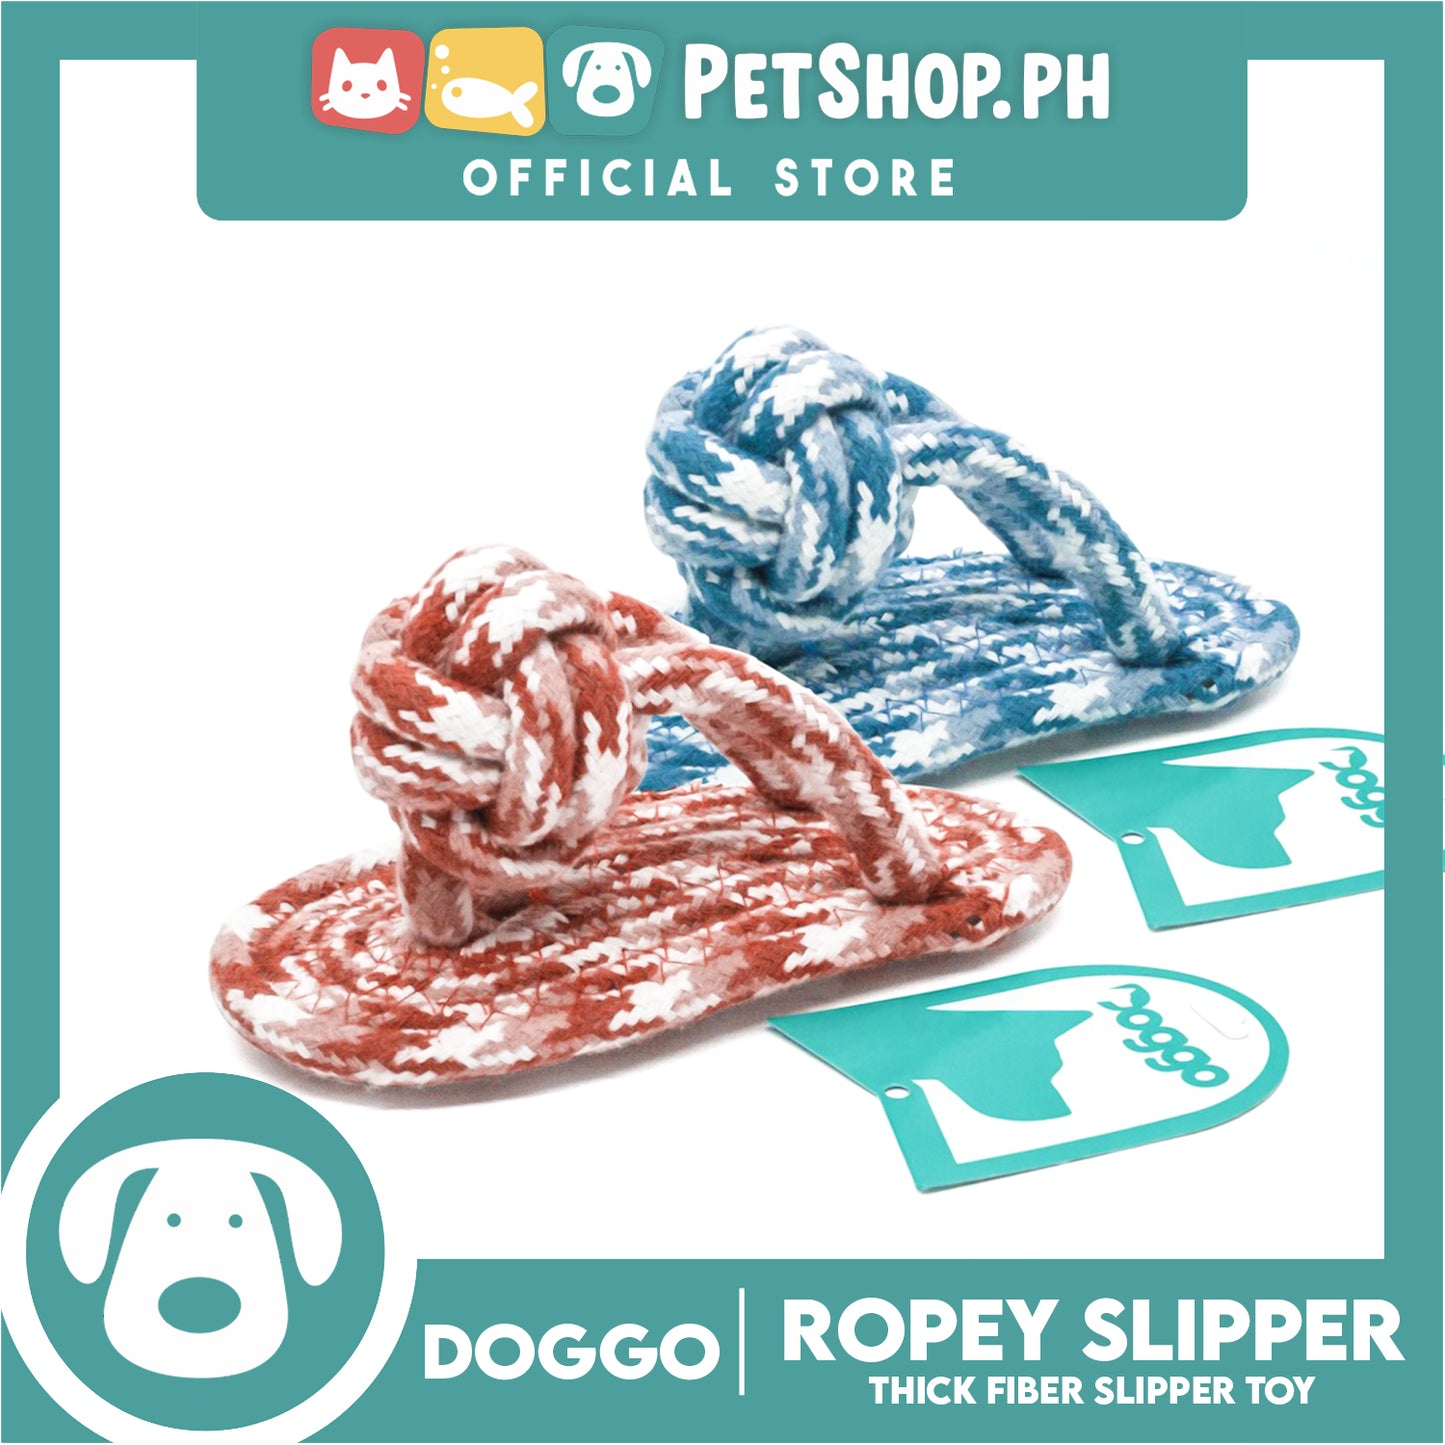 Doggo Ropey Slipper (Pink) Thick Fiber Slipper Dog Toy